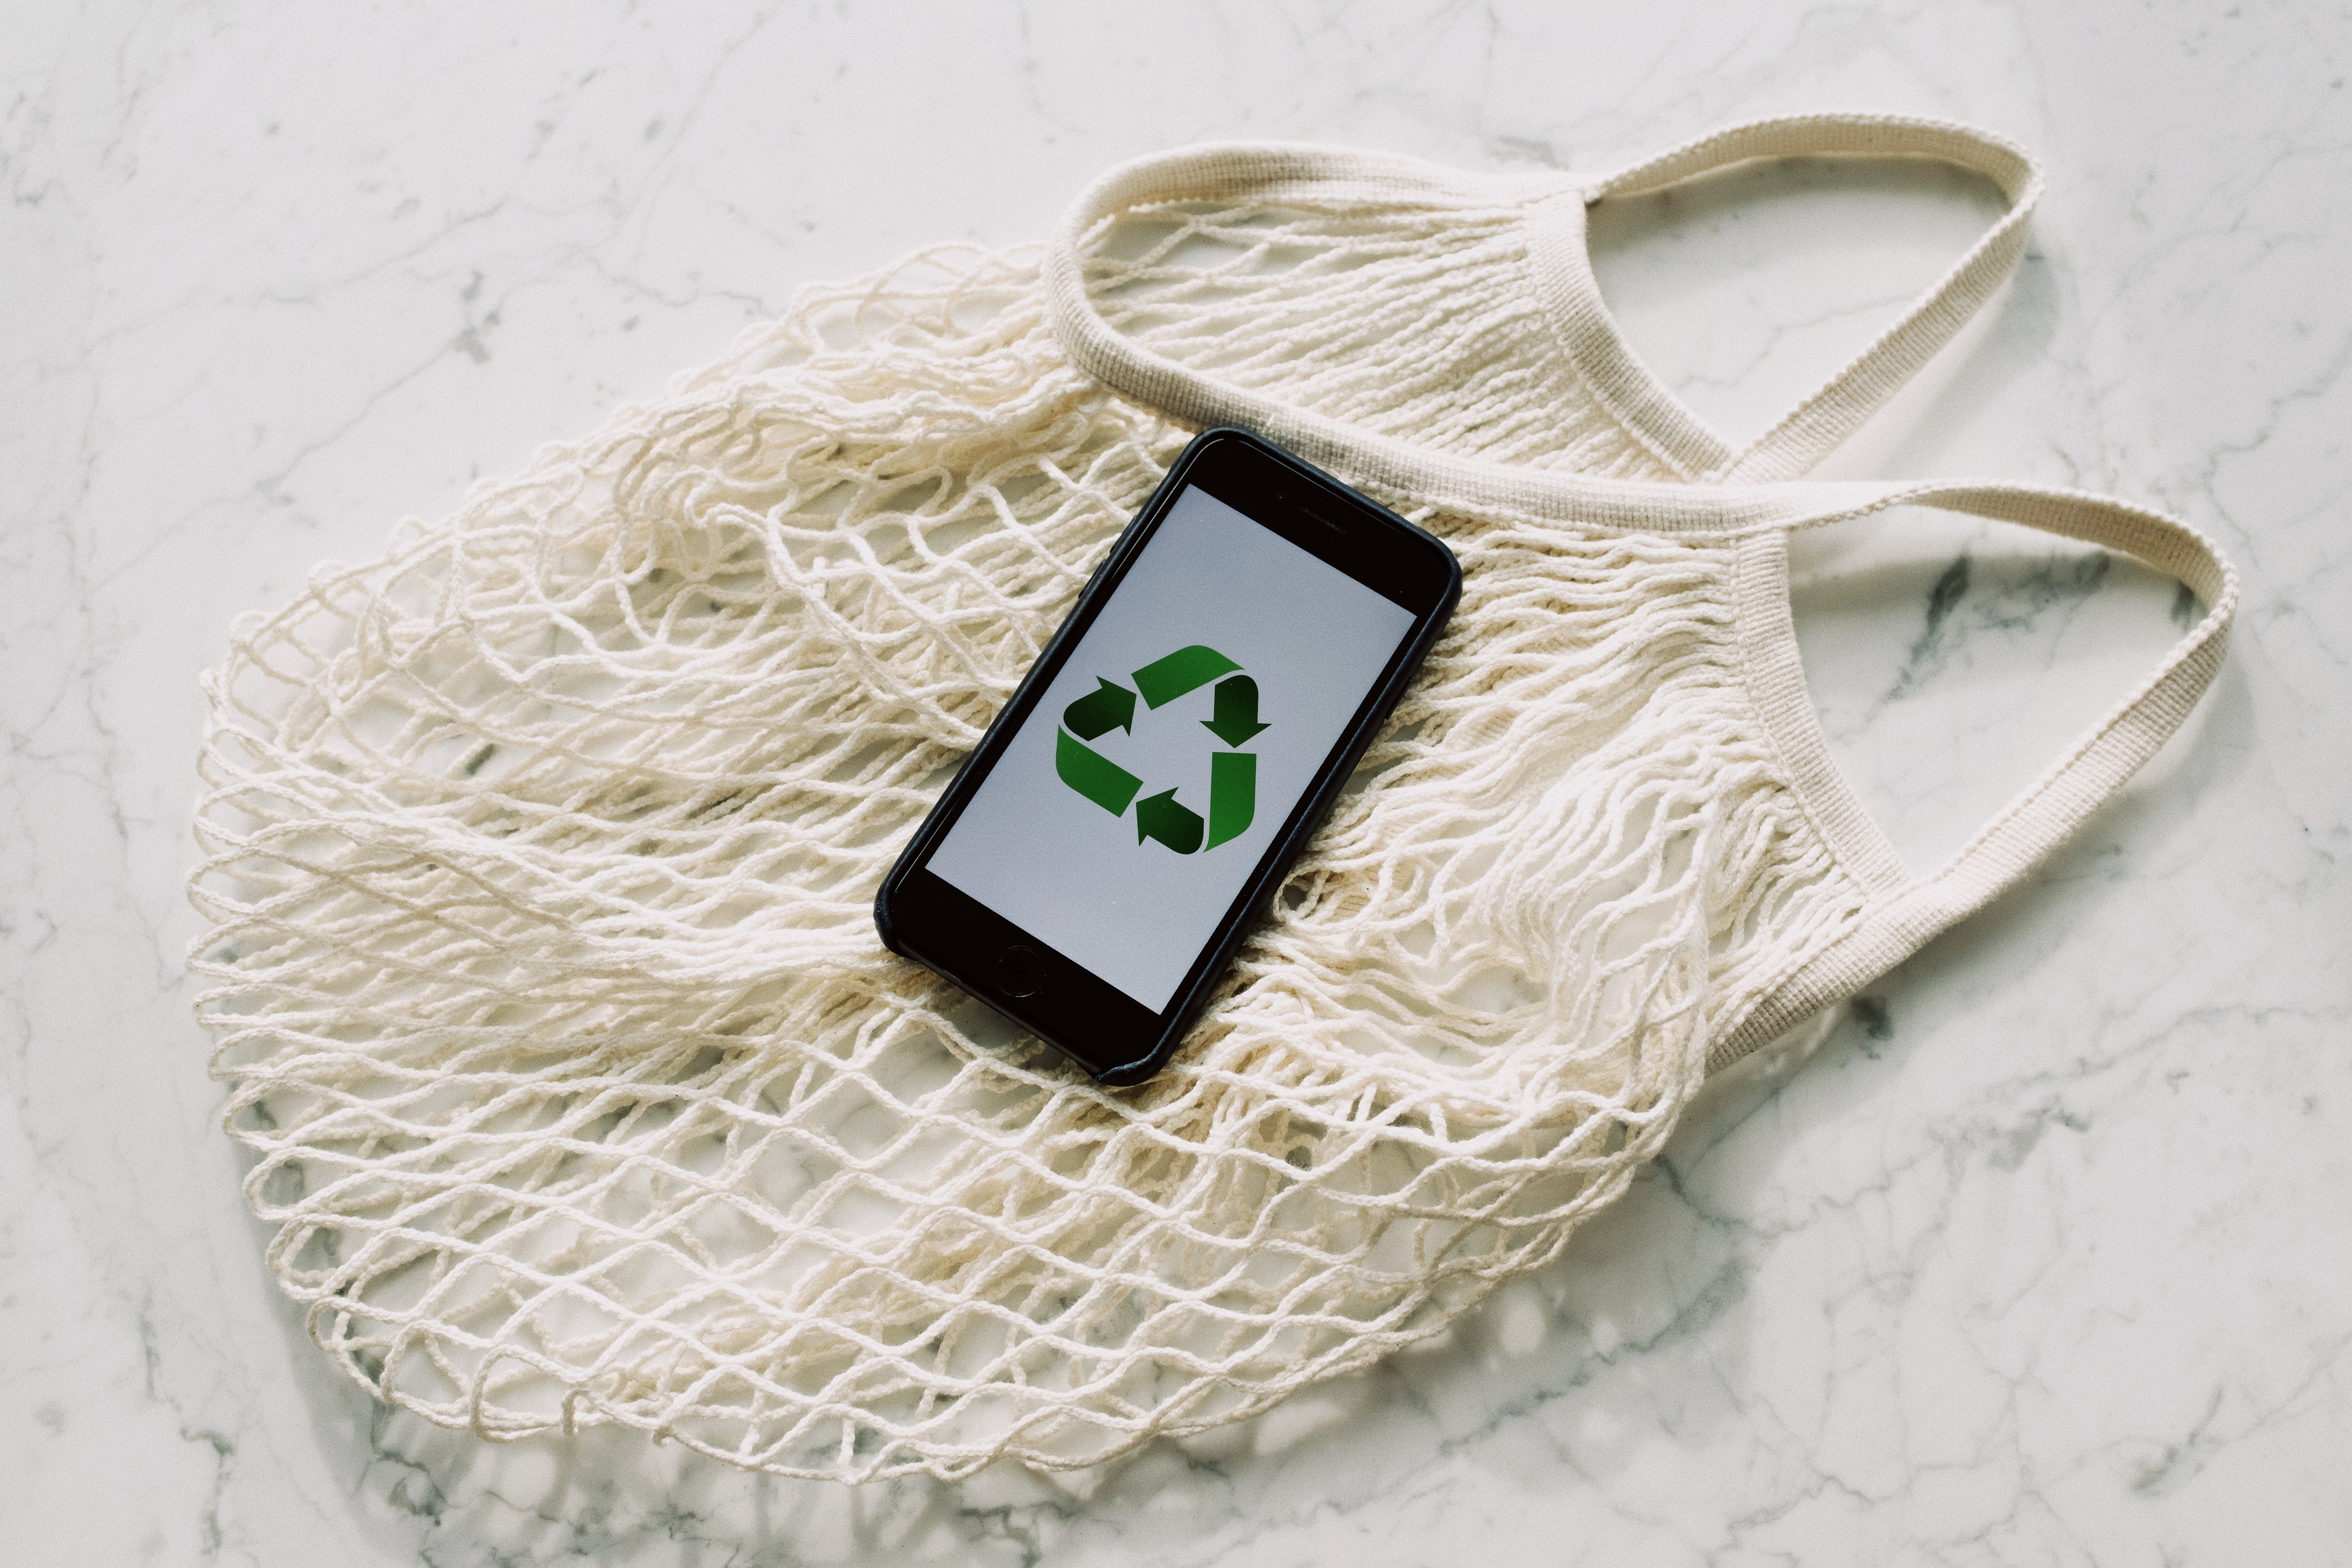 噢啦OOLA环保回收公益平台,行业资讯,噢啦回收,环保回收,线上回收,数码产品回收